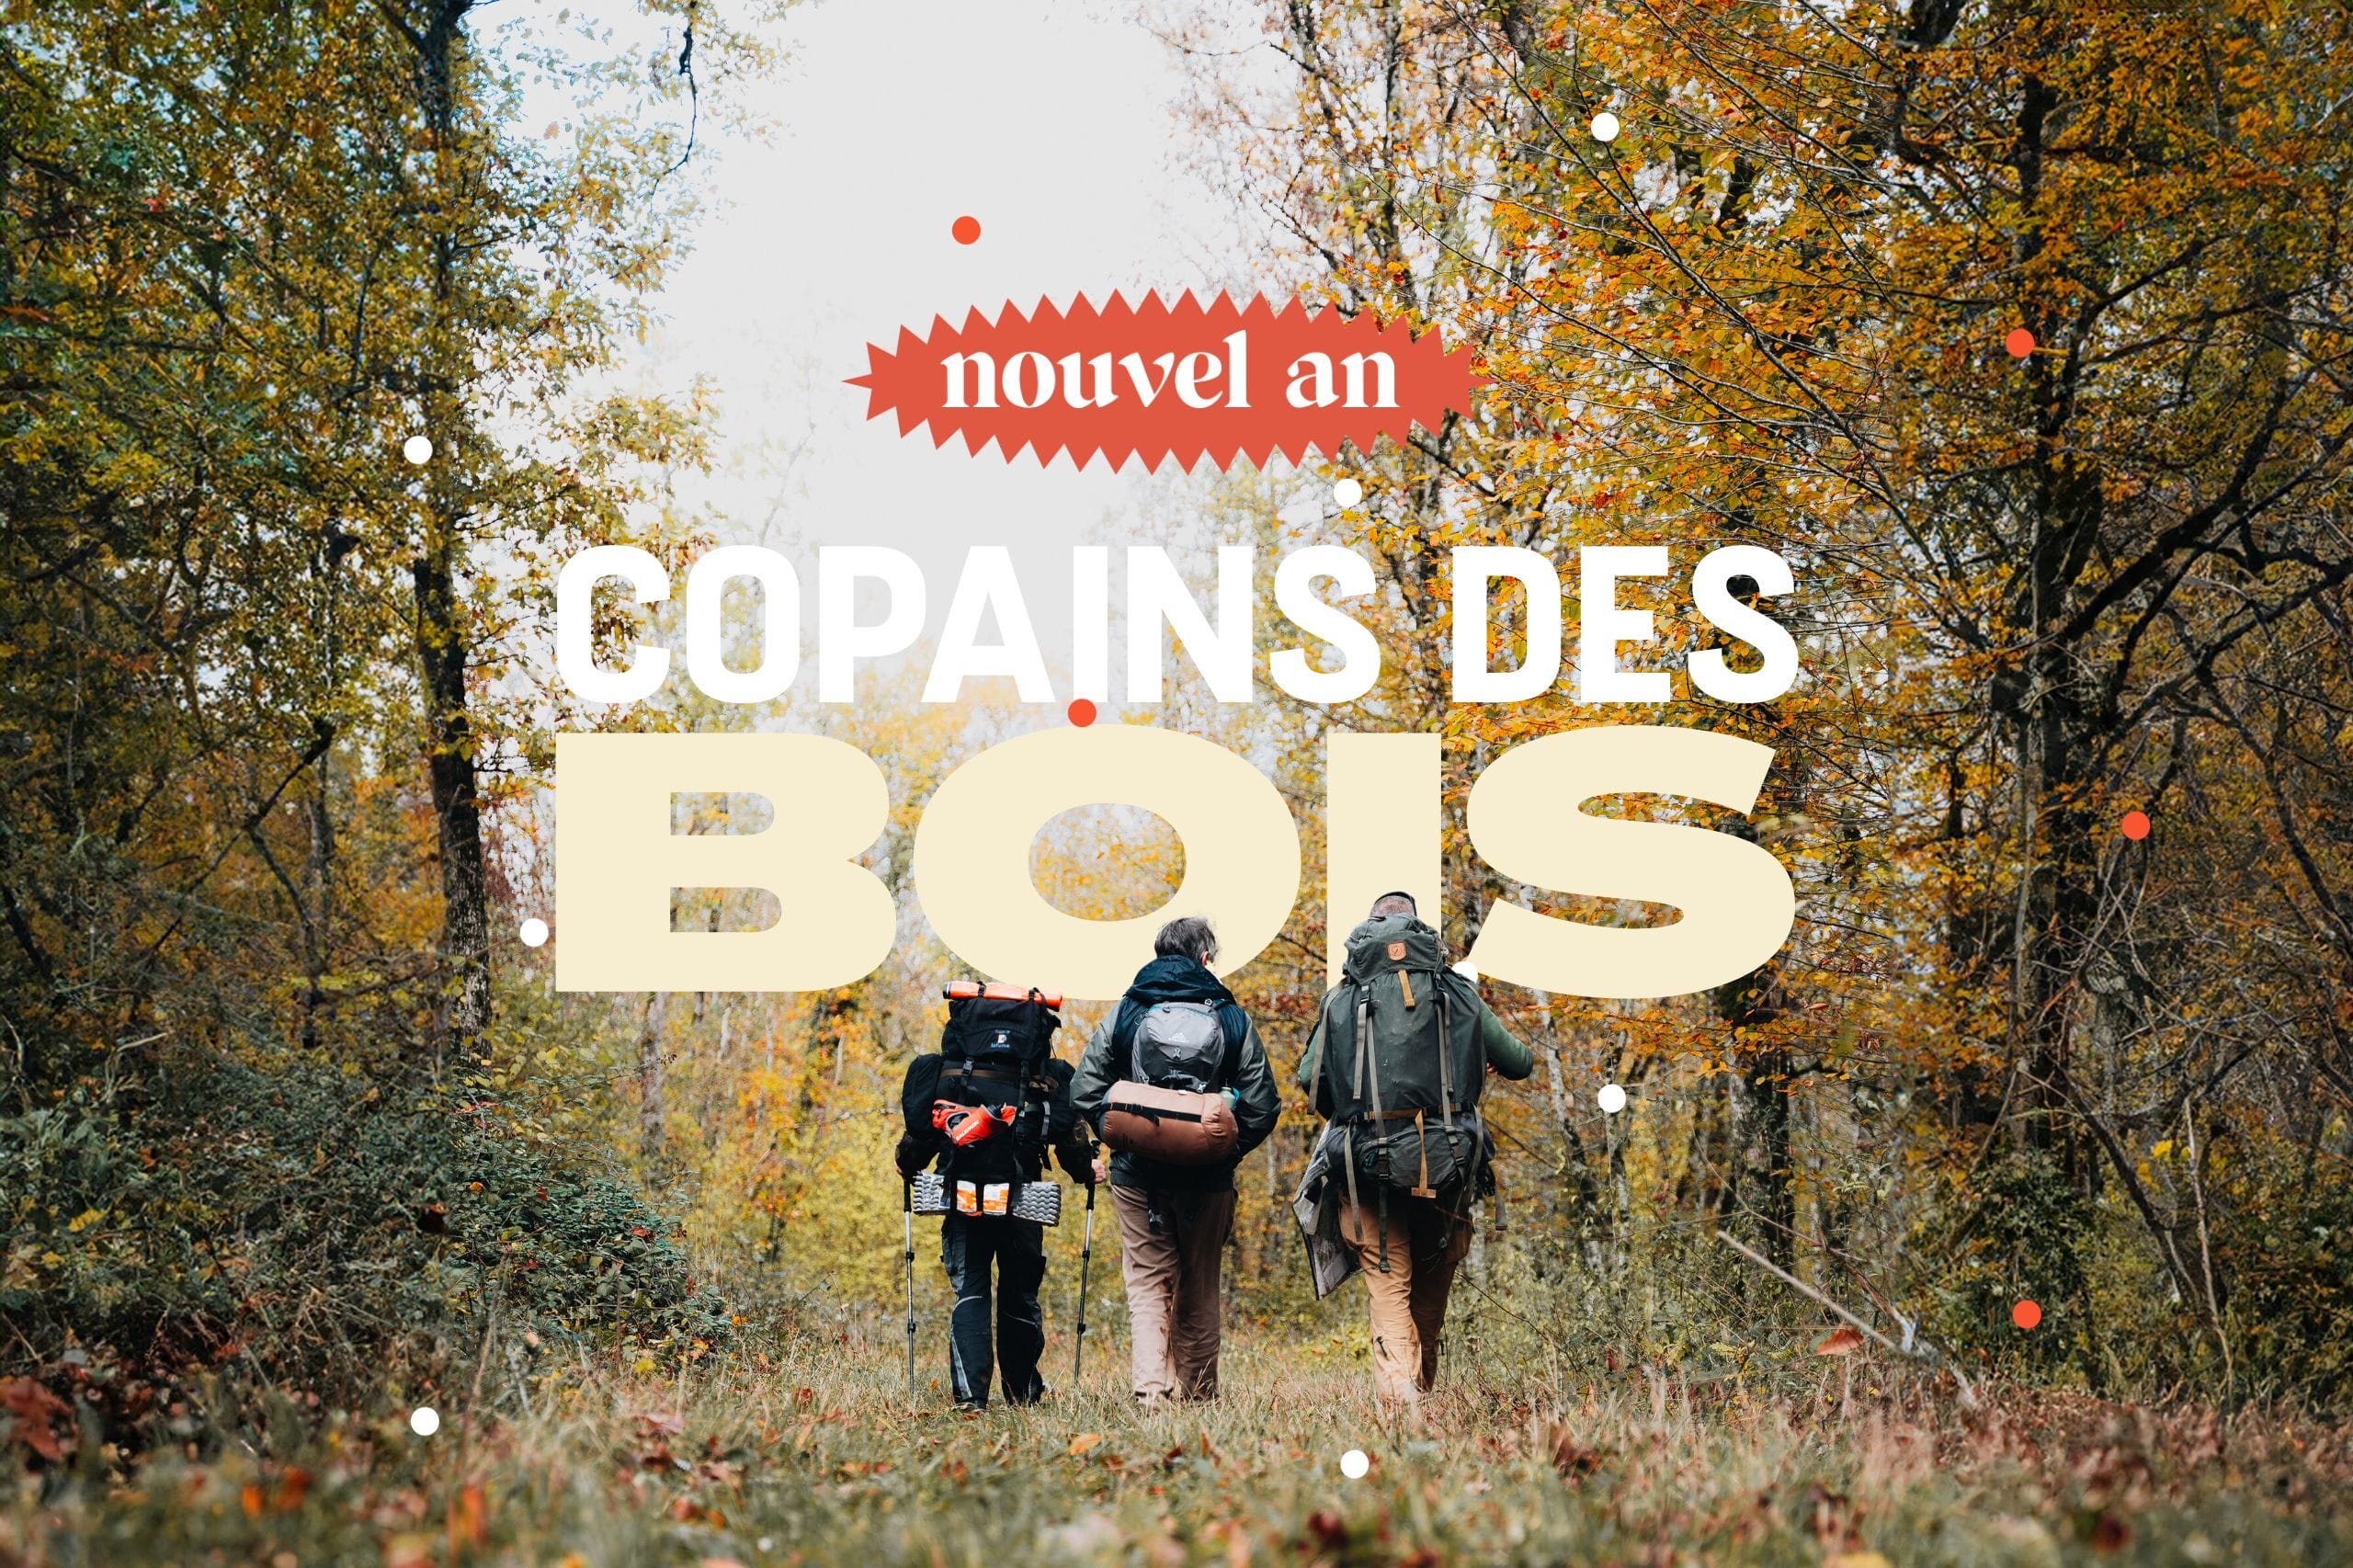 copains des bois  : Nouvel an survie : escape game géant et bivouac près de Paris